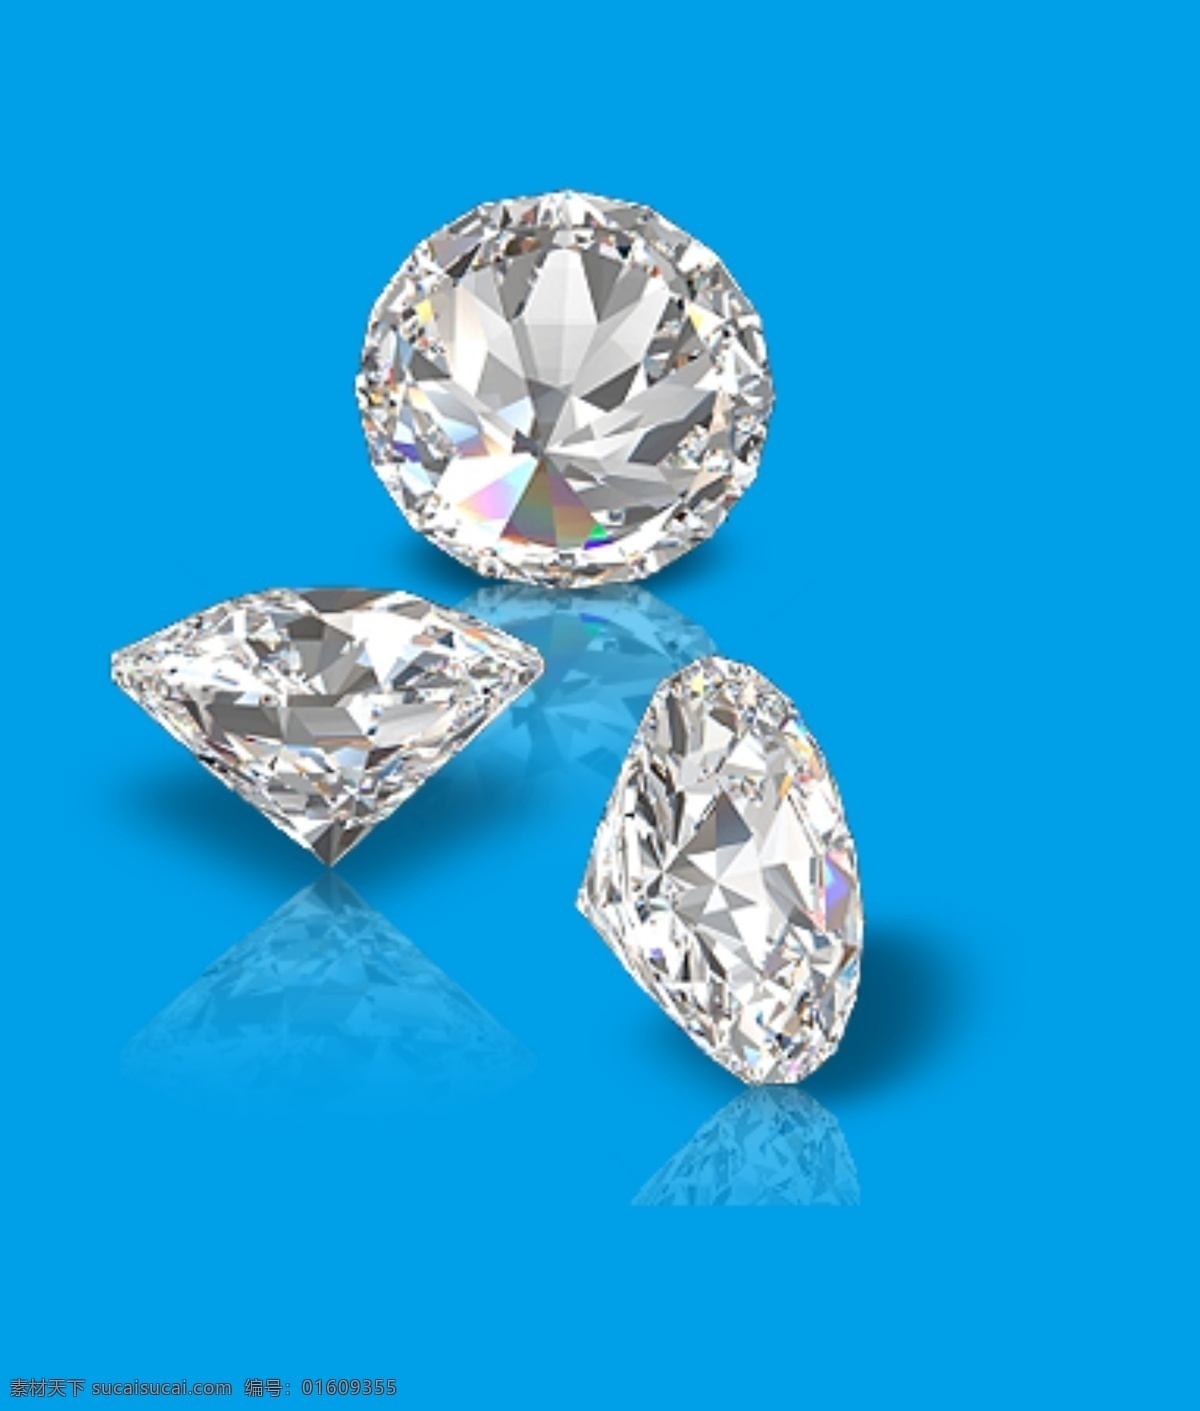 钻石素材 钻石 钻戒 钻戒素材